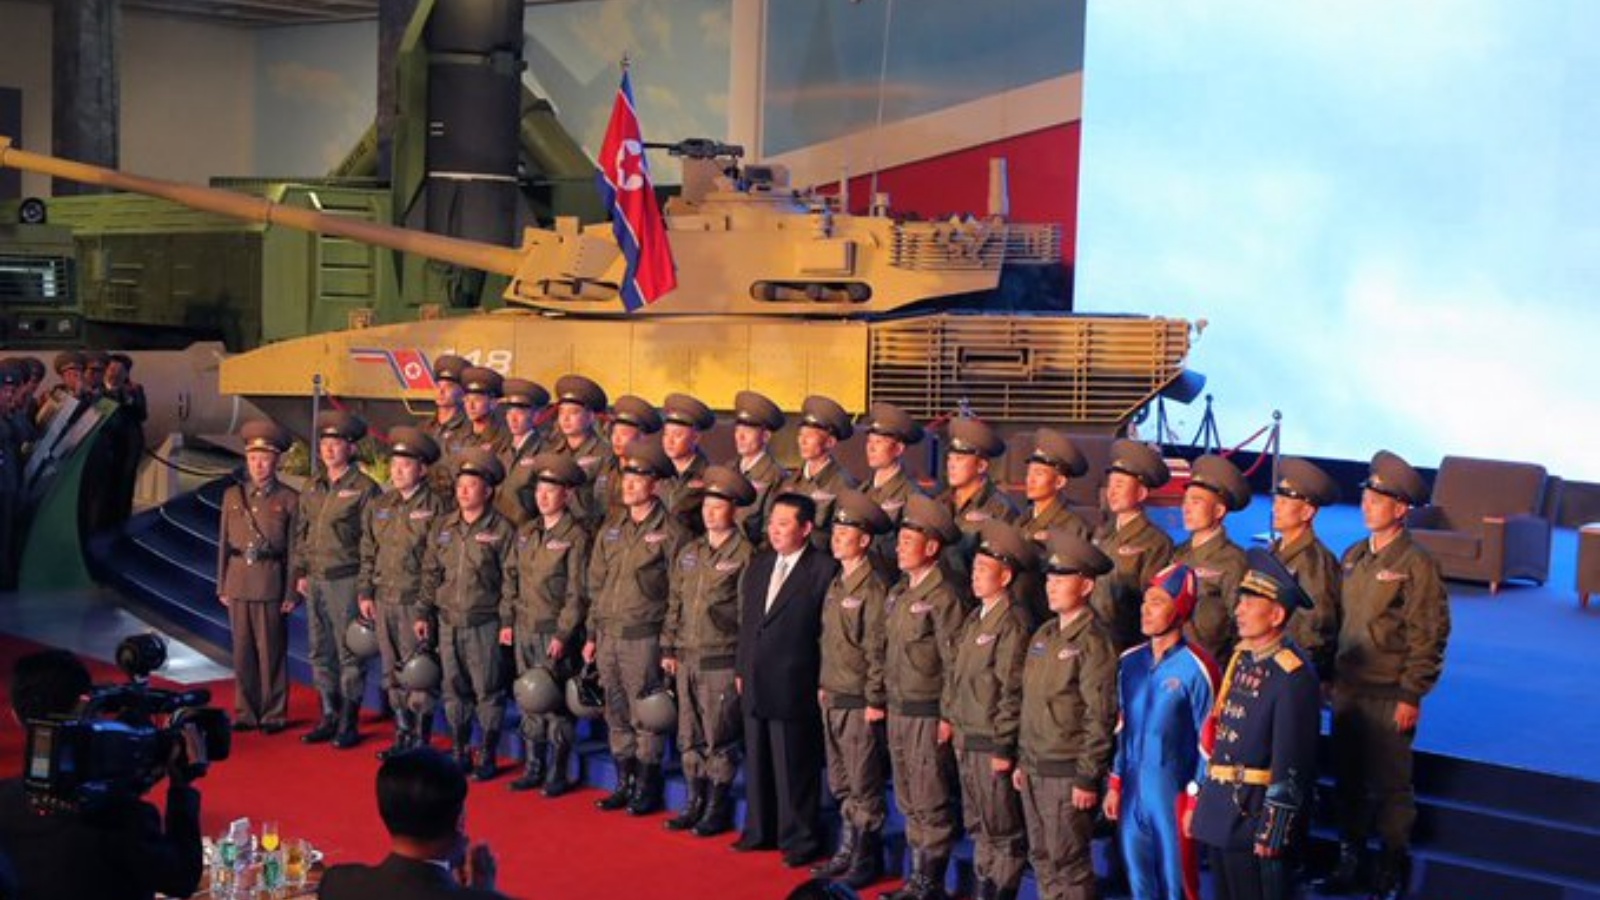 الزعيم الكوري الشمالي كيم يونغ أون في صورة مع عناصر من الجيش في مناسبة معرض مخصص للدفاع، نشرتها صفحة Status-6 @Archer83Able في تويتر.